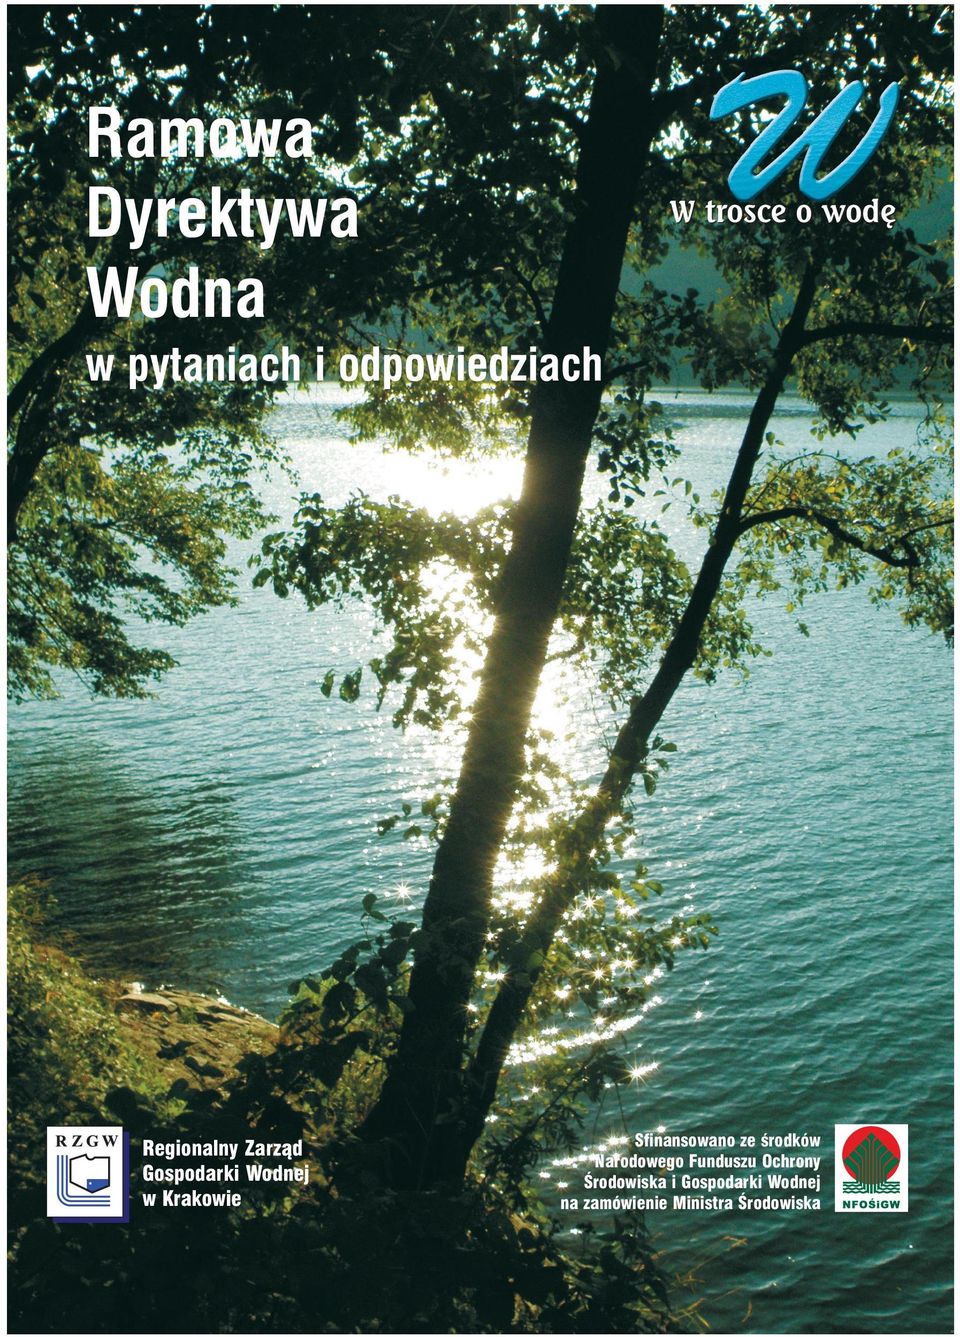 Gospodarki Wodnej w Krakowie Sfinansowano ze Êrodków Narodowego